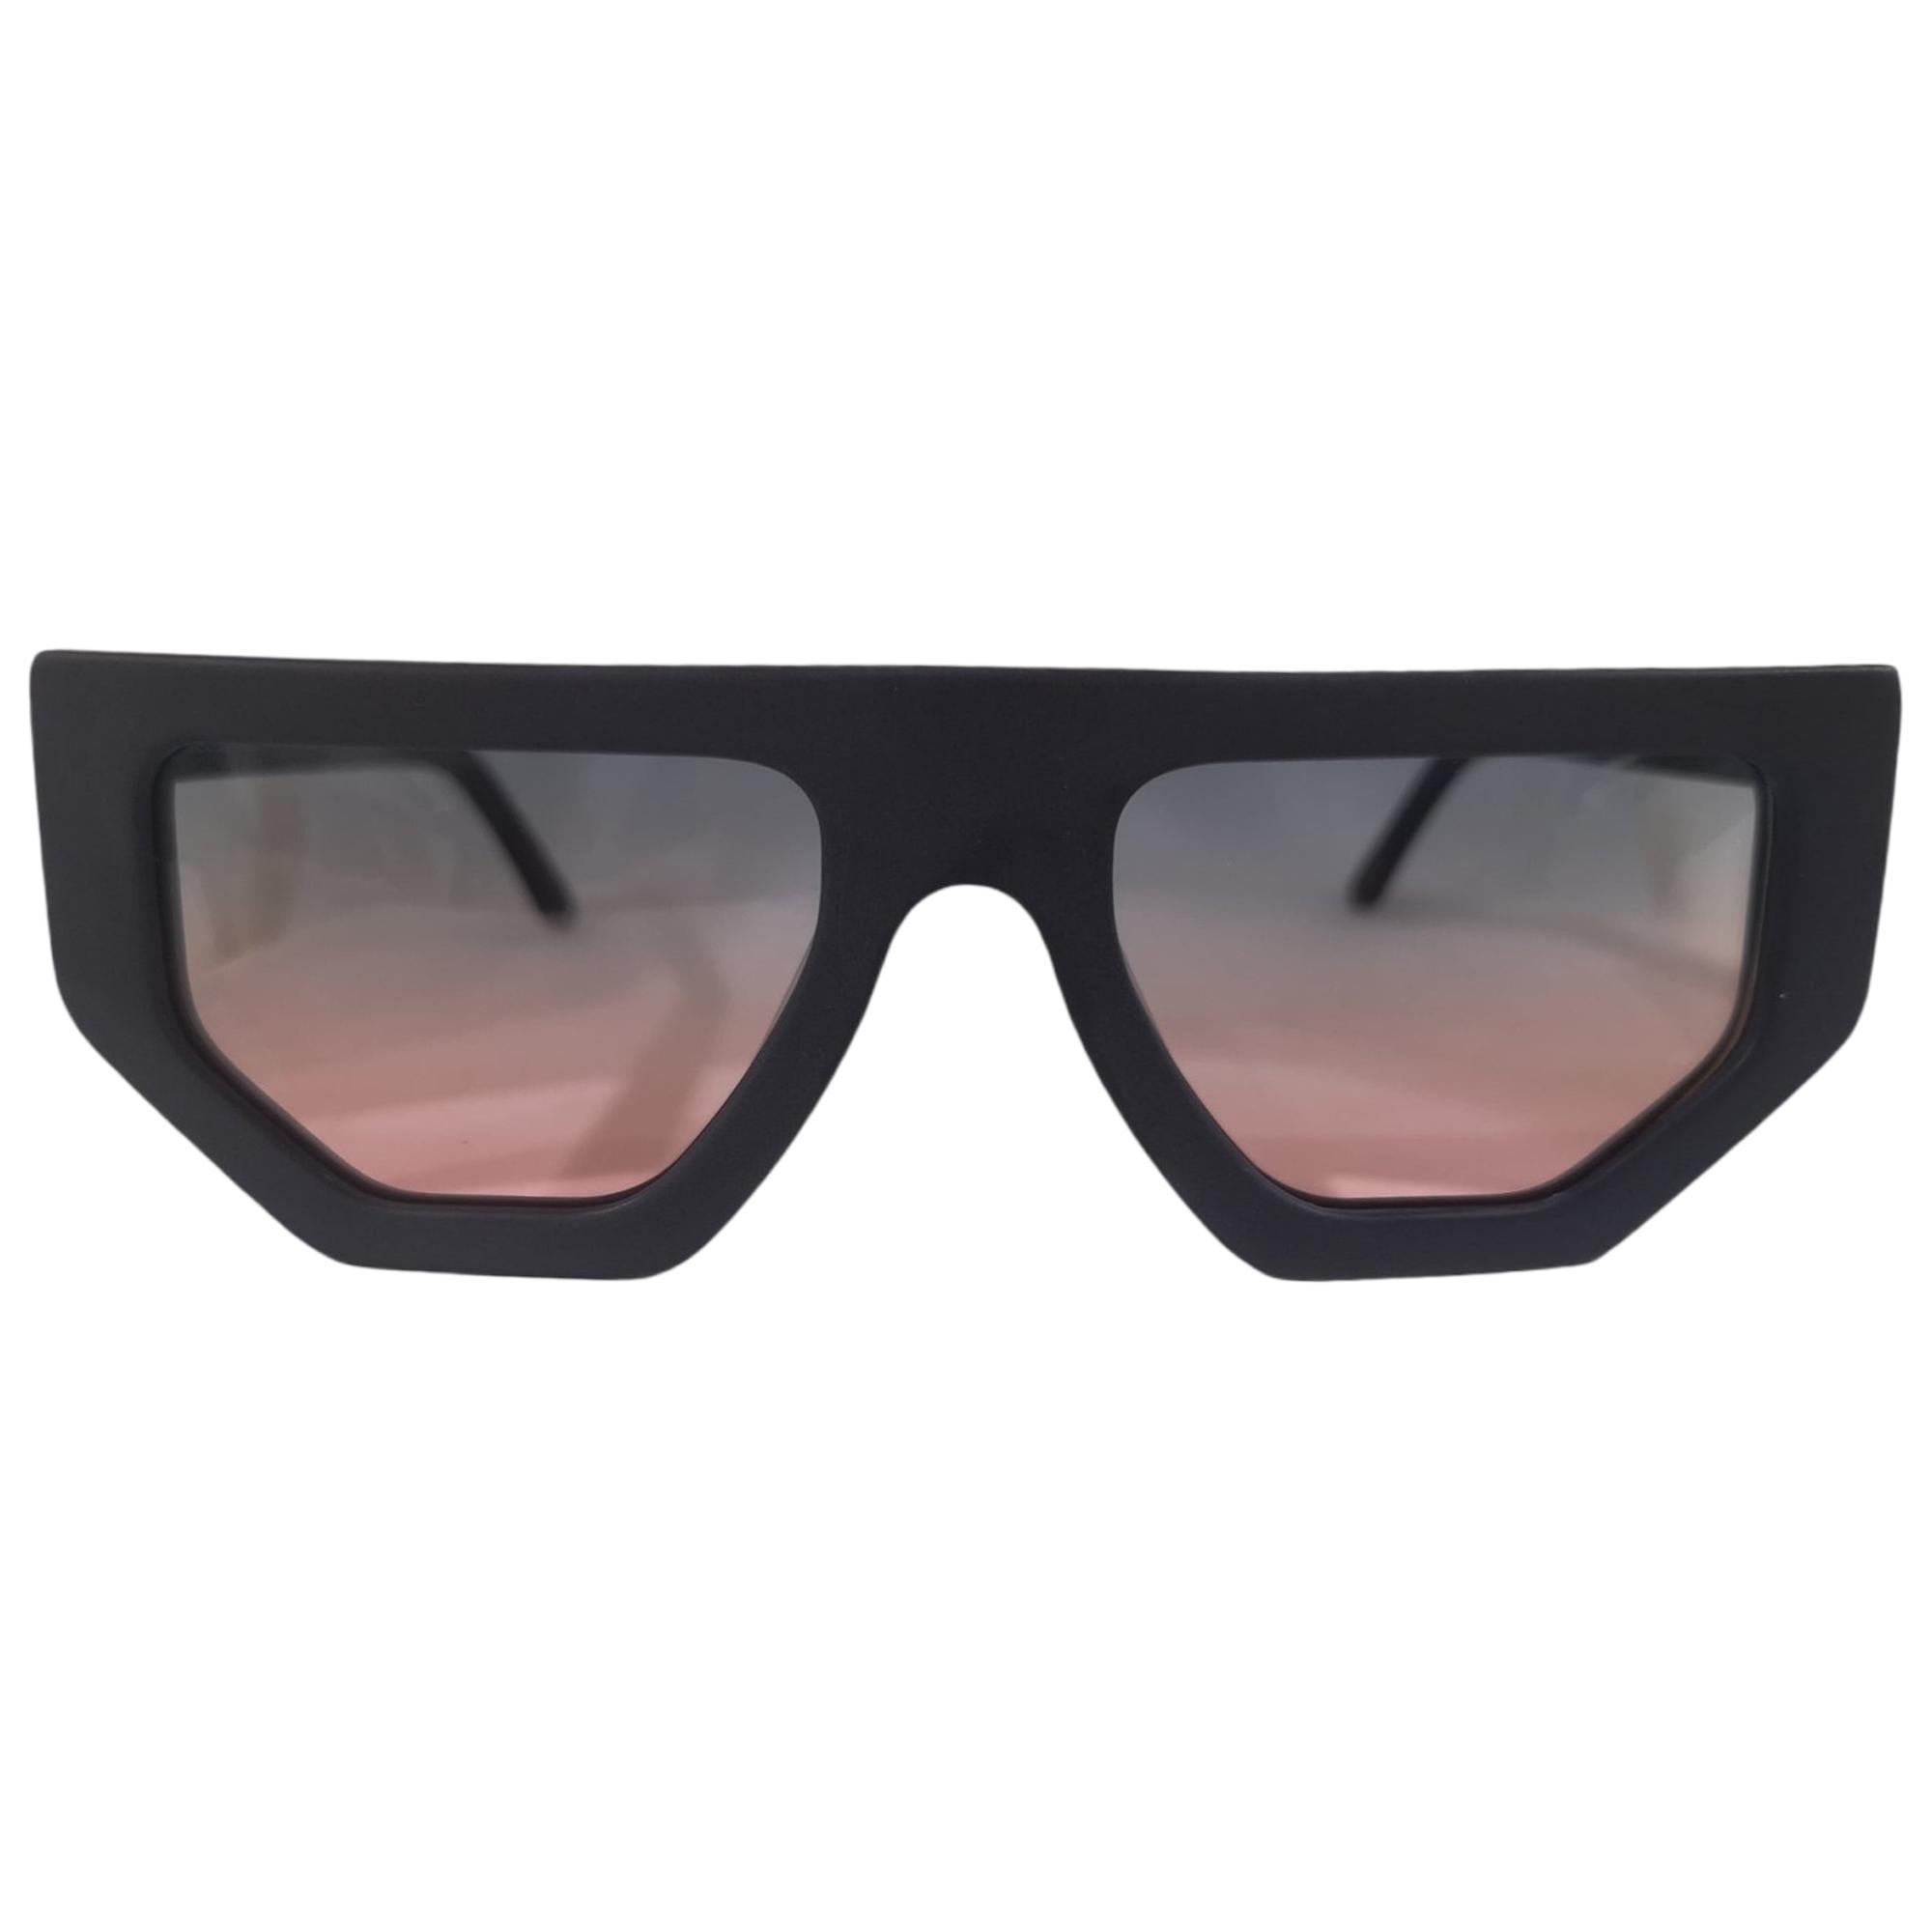 Black multicoloured glasses sunglasses NWOT